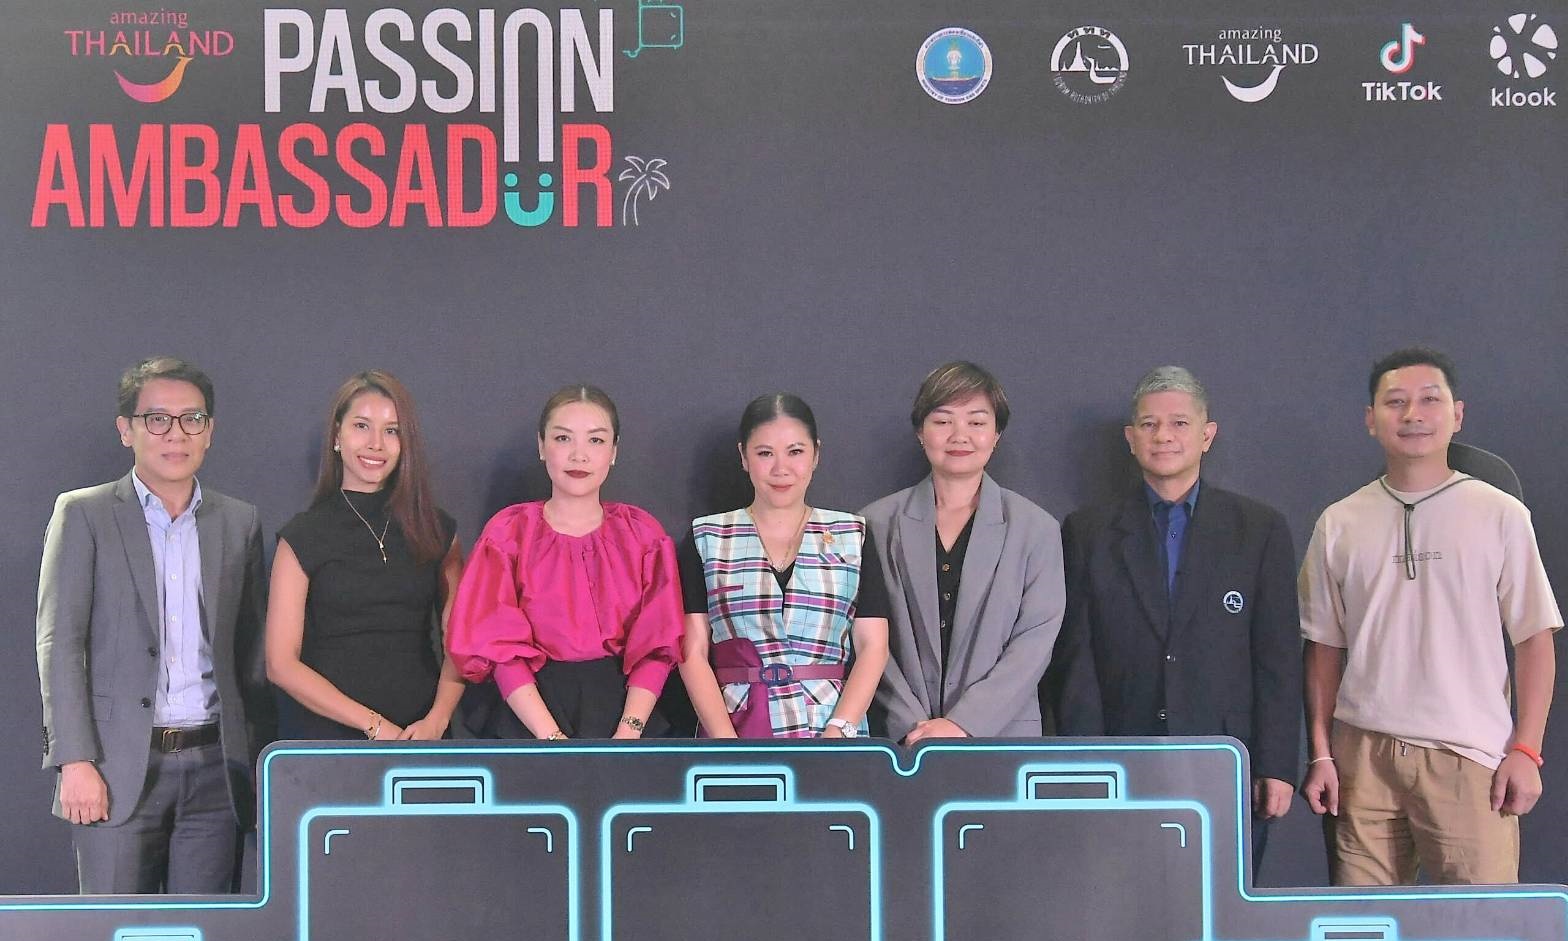 ททท. เปิดตัว Amazing Thailand Passion Ambassador ร่วมสร้างสรรค์ ด้านท่องเที่ยว